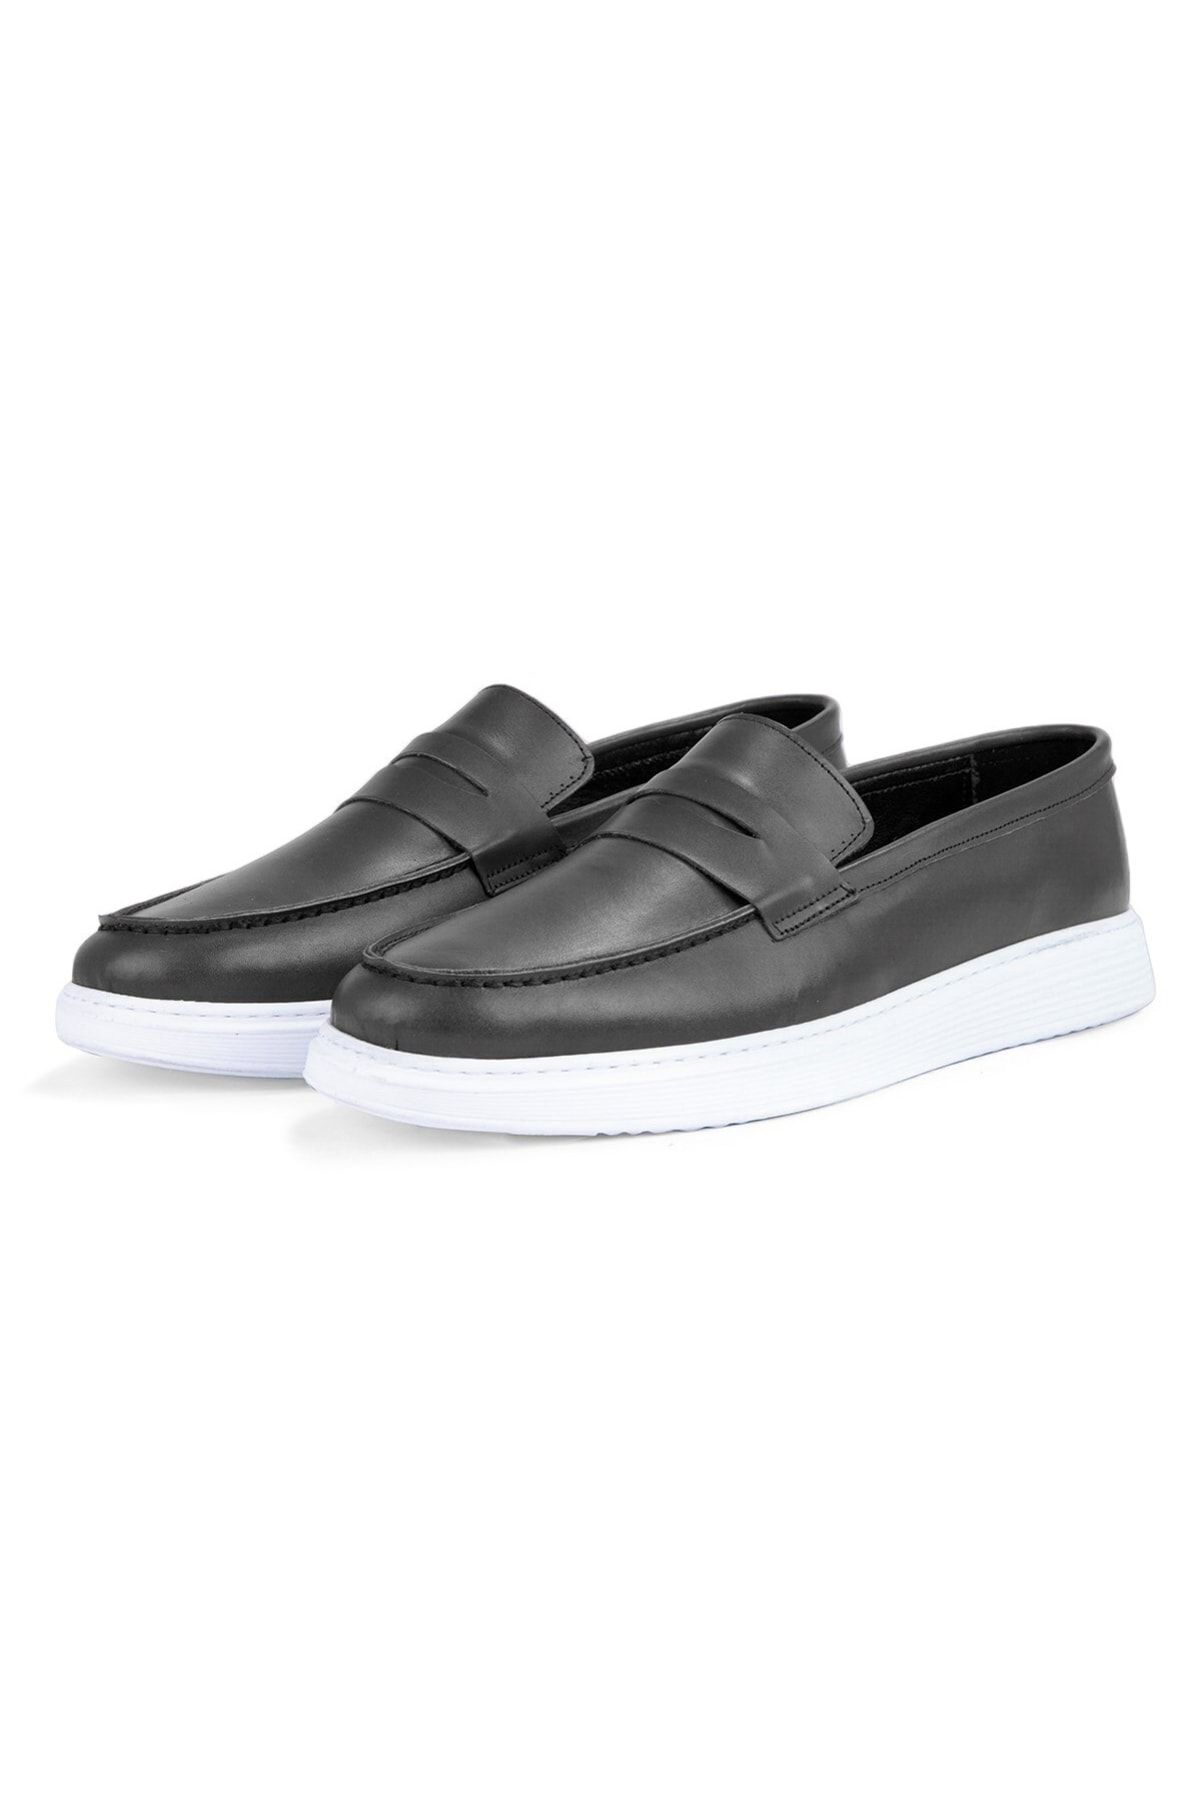 Ducavelli Trim Hakiki Deri Erkek Günlük Ayakkabı Loafer Ayakkabı, Hafif Ayakkabı, Yazlık Ayakkabı Siyah